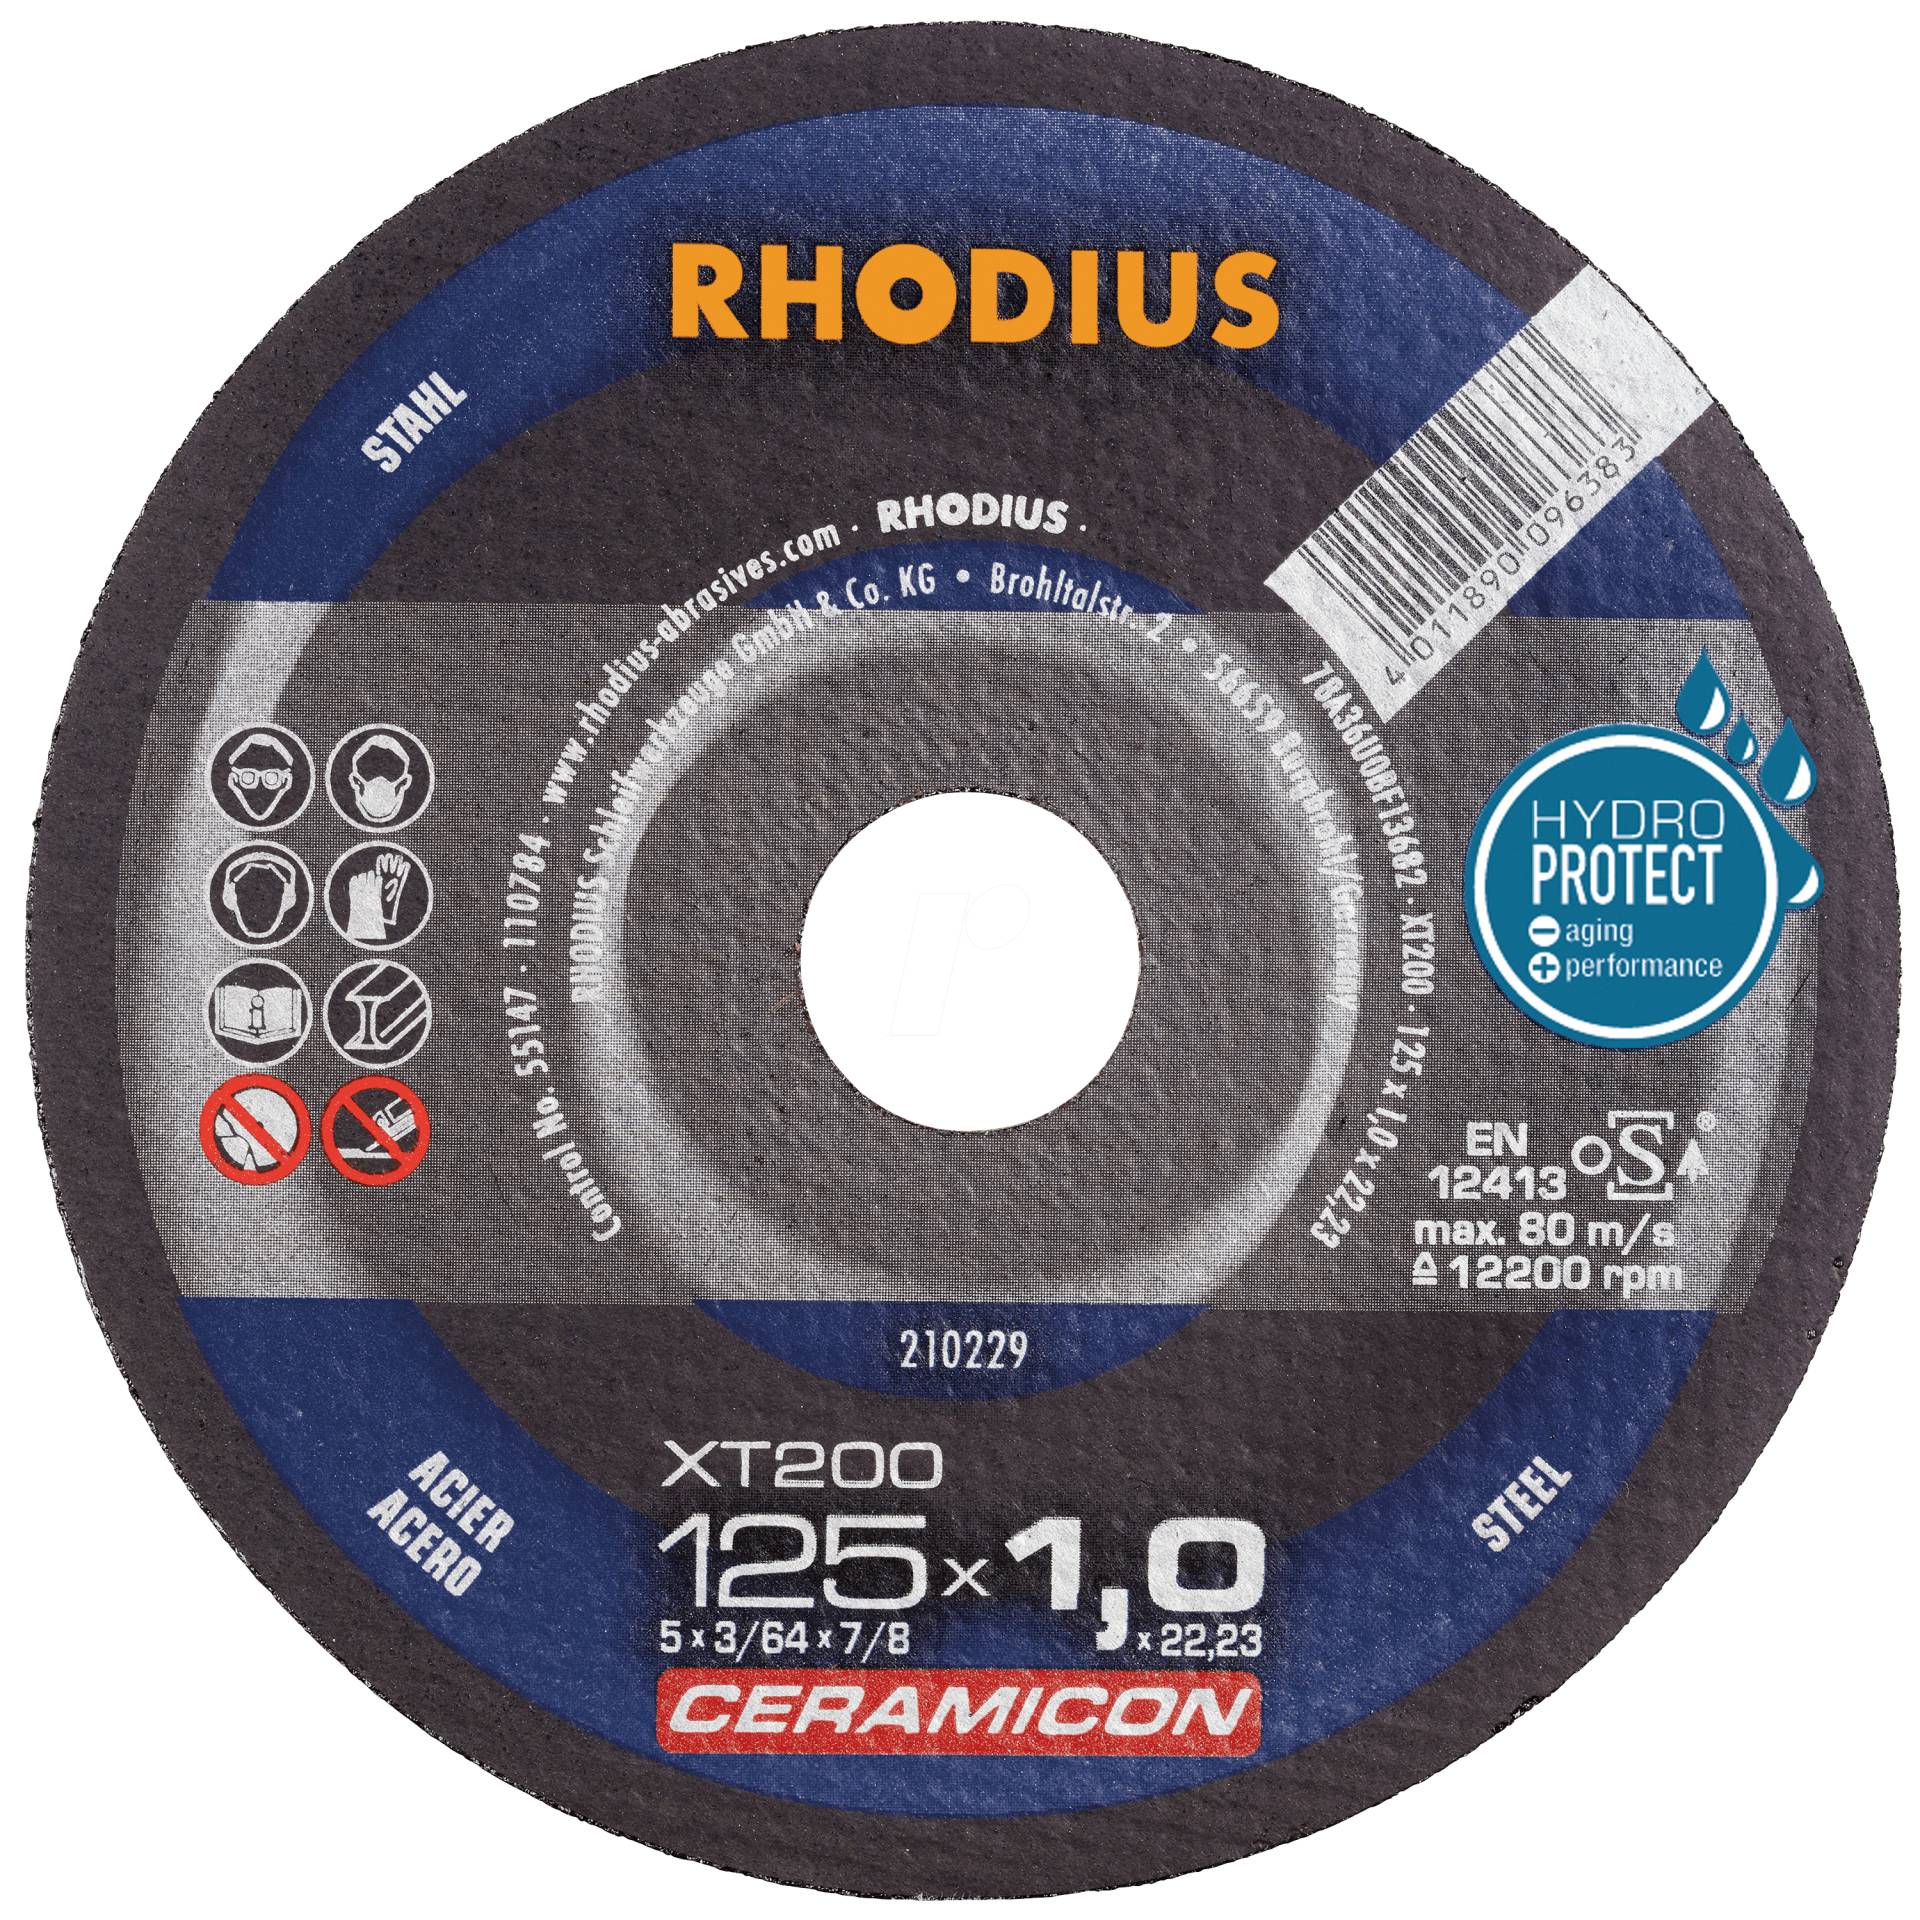 RHO 210229 - Trennscheibe, Stahl, 125 mm, 1 mm, XT200, 22,23 mm von Rhodius